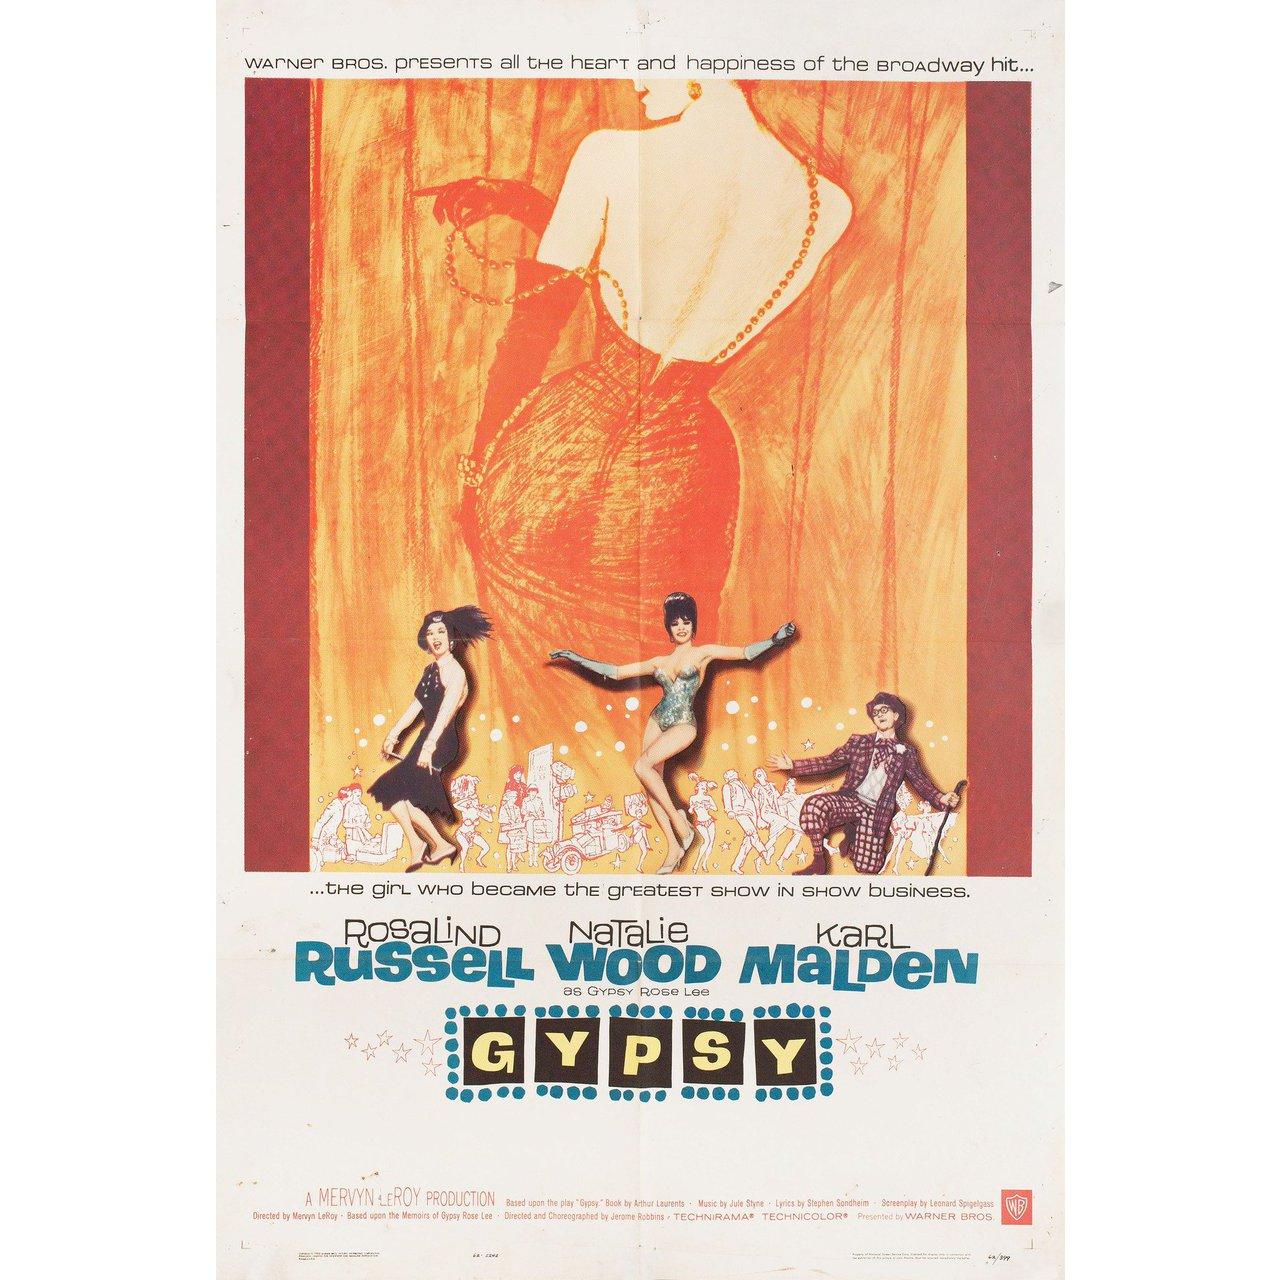 Originalplakat von 1962 für den Film Gypsy unter der Regie von Mervyn LeRoy mit Rosalind Russell / Natalie Wood / Karl Malden / Paul Wallace. Gut-Sehr guter Zustand, gefaltet mit Wasserschaden. Viele Originalplakate wurden gefaltet herausgegeben